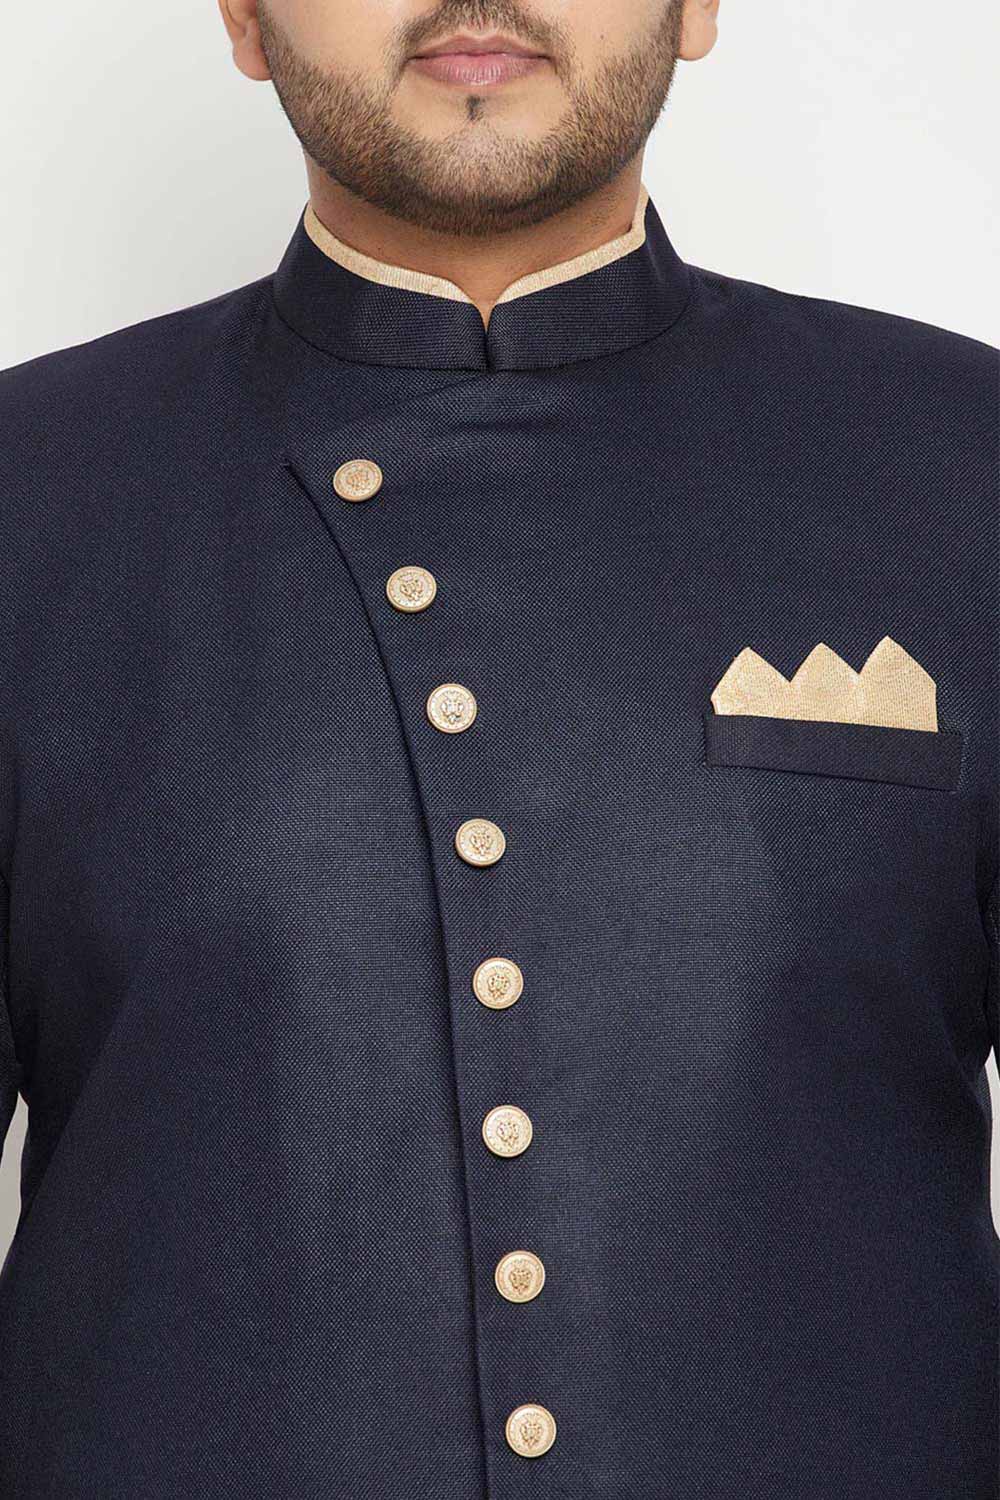 Buy Men's Silk Blend Solid Sherwani Top in Navy Blue - Zoom in